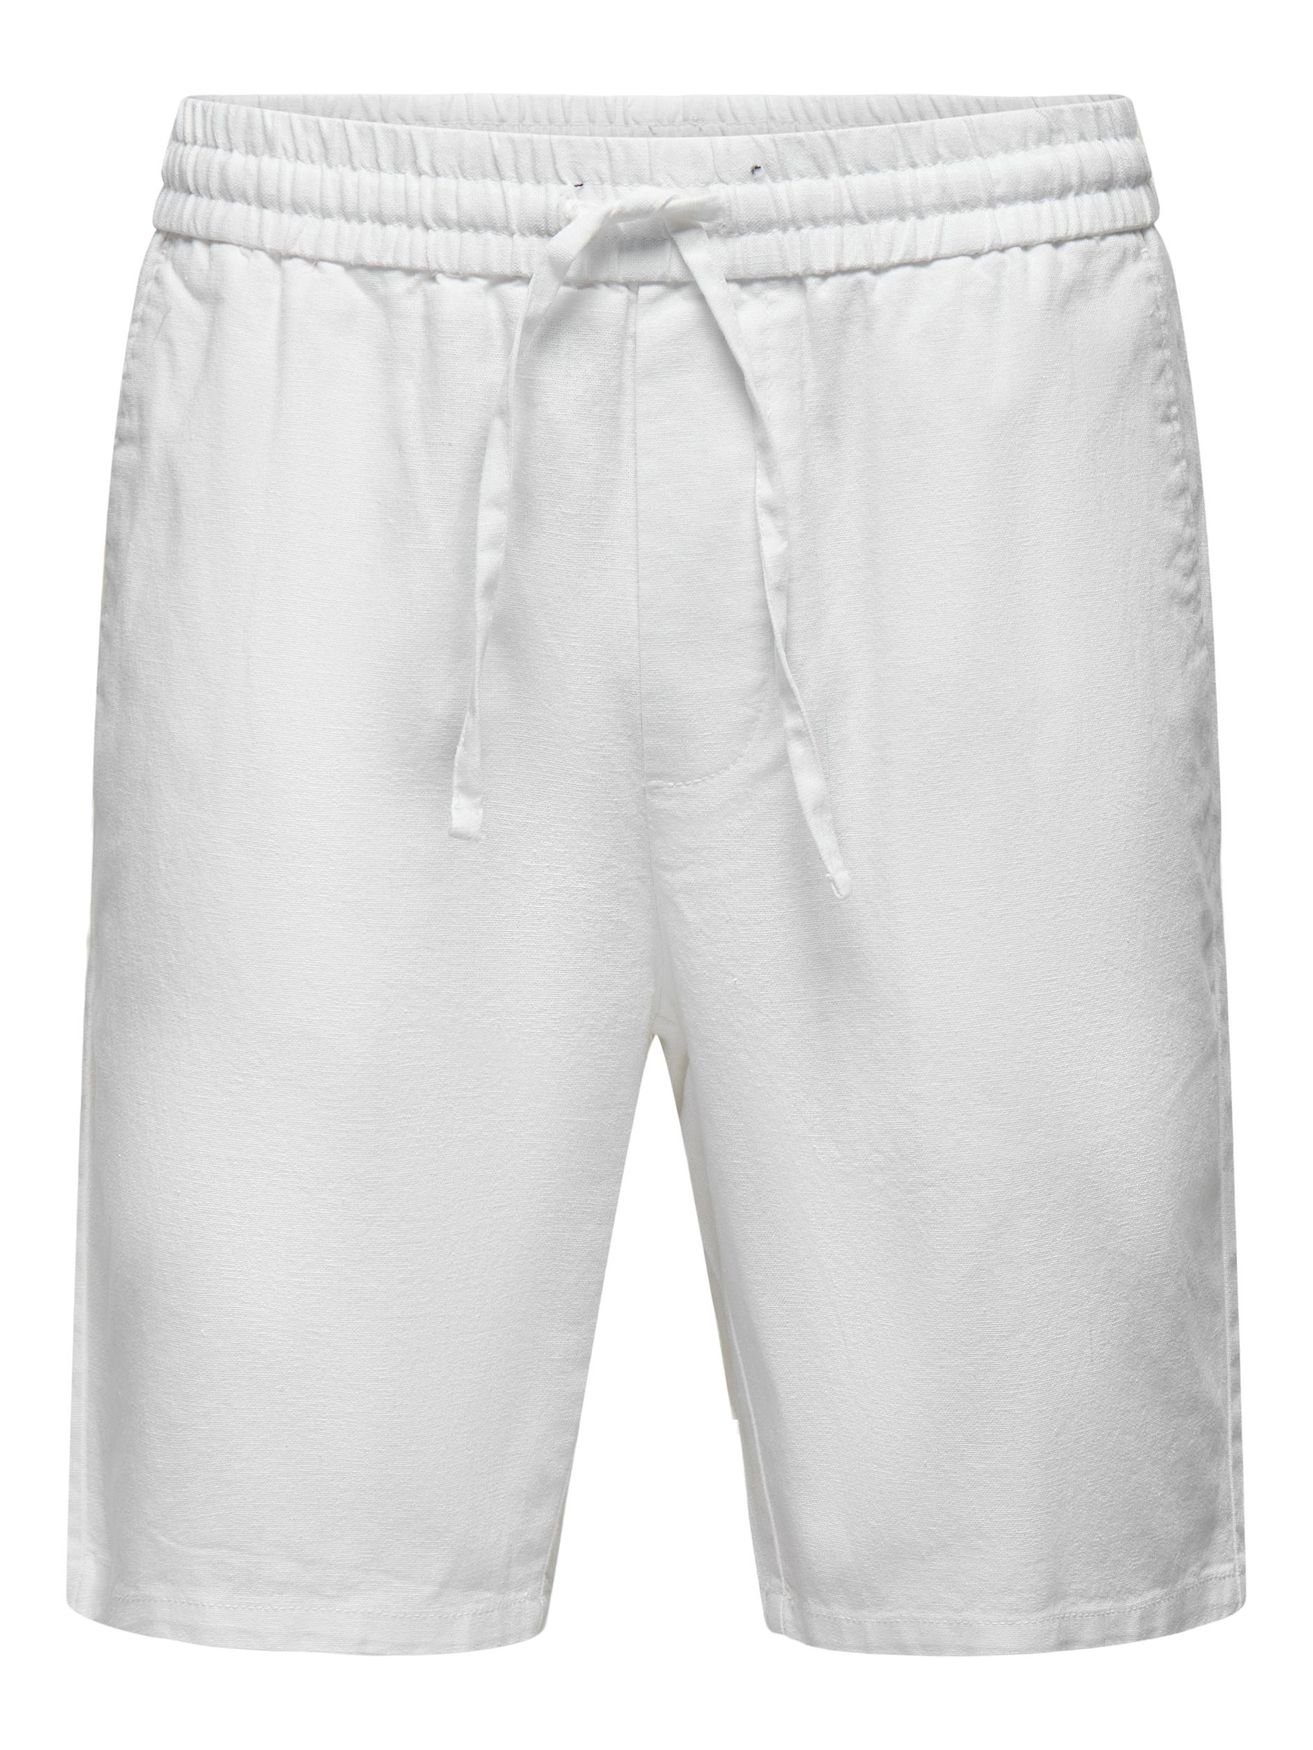 ONLY & SONS Chinoshorts Leichte in Shorts Bermuda Weiß 5058 ONSLINUS Stoff Hose